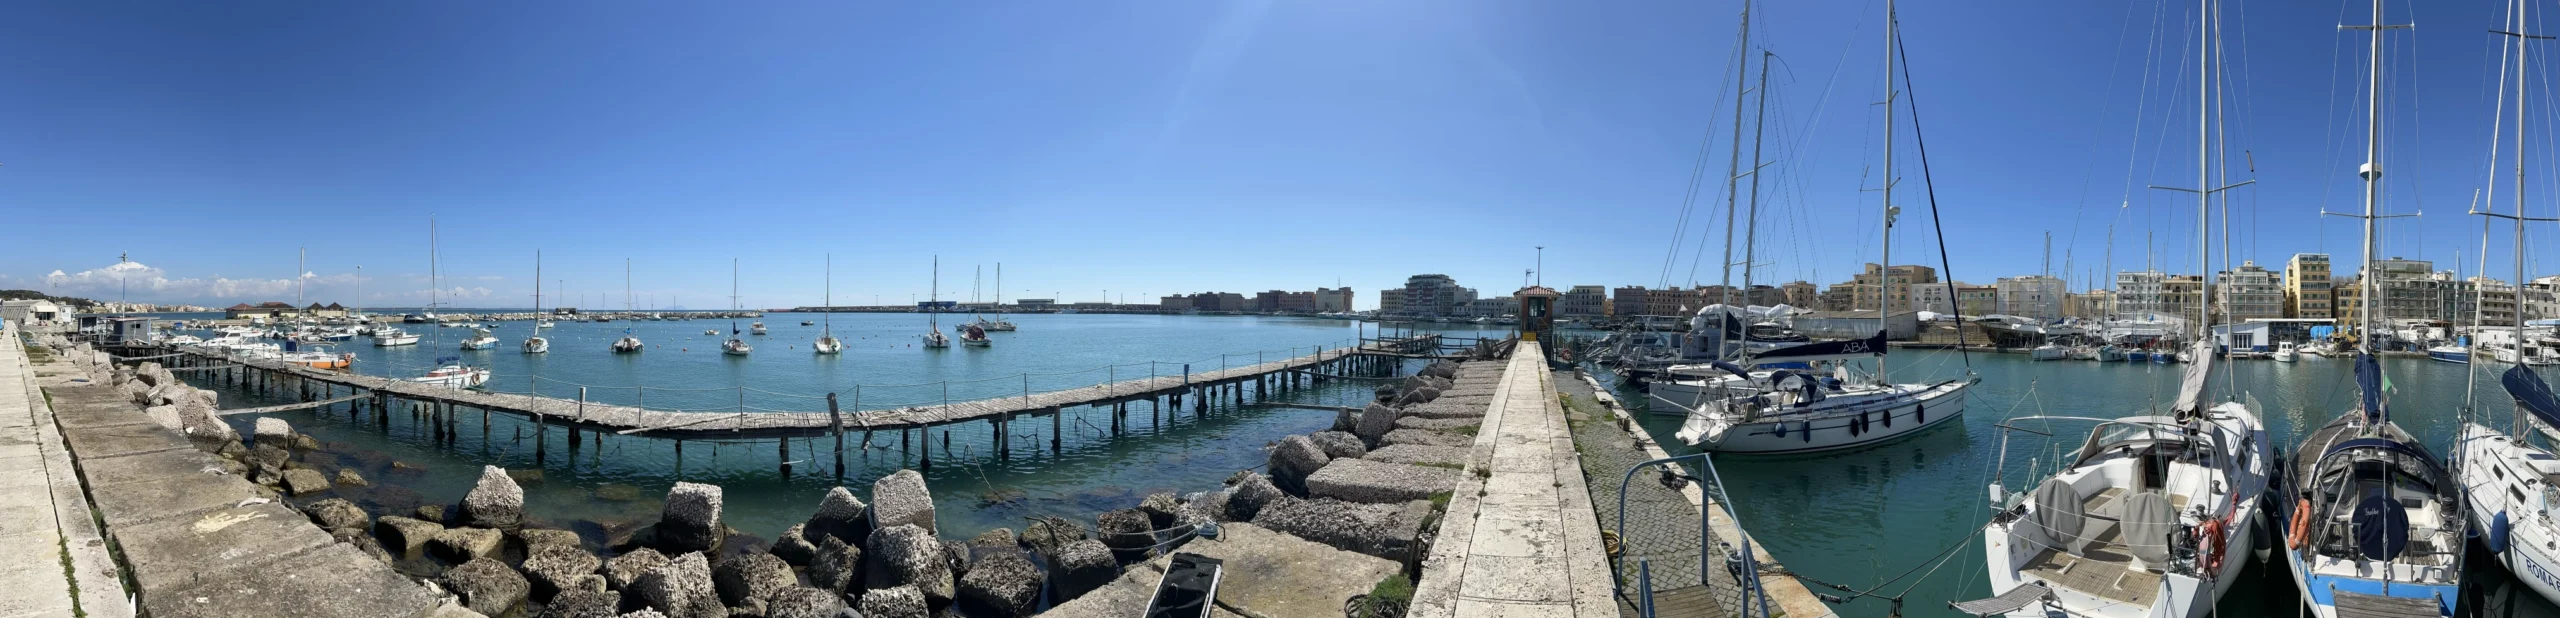 3 panoramas at Anzio port